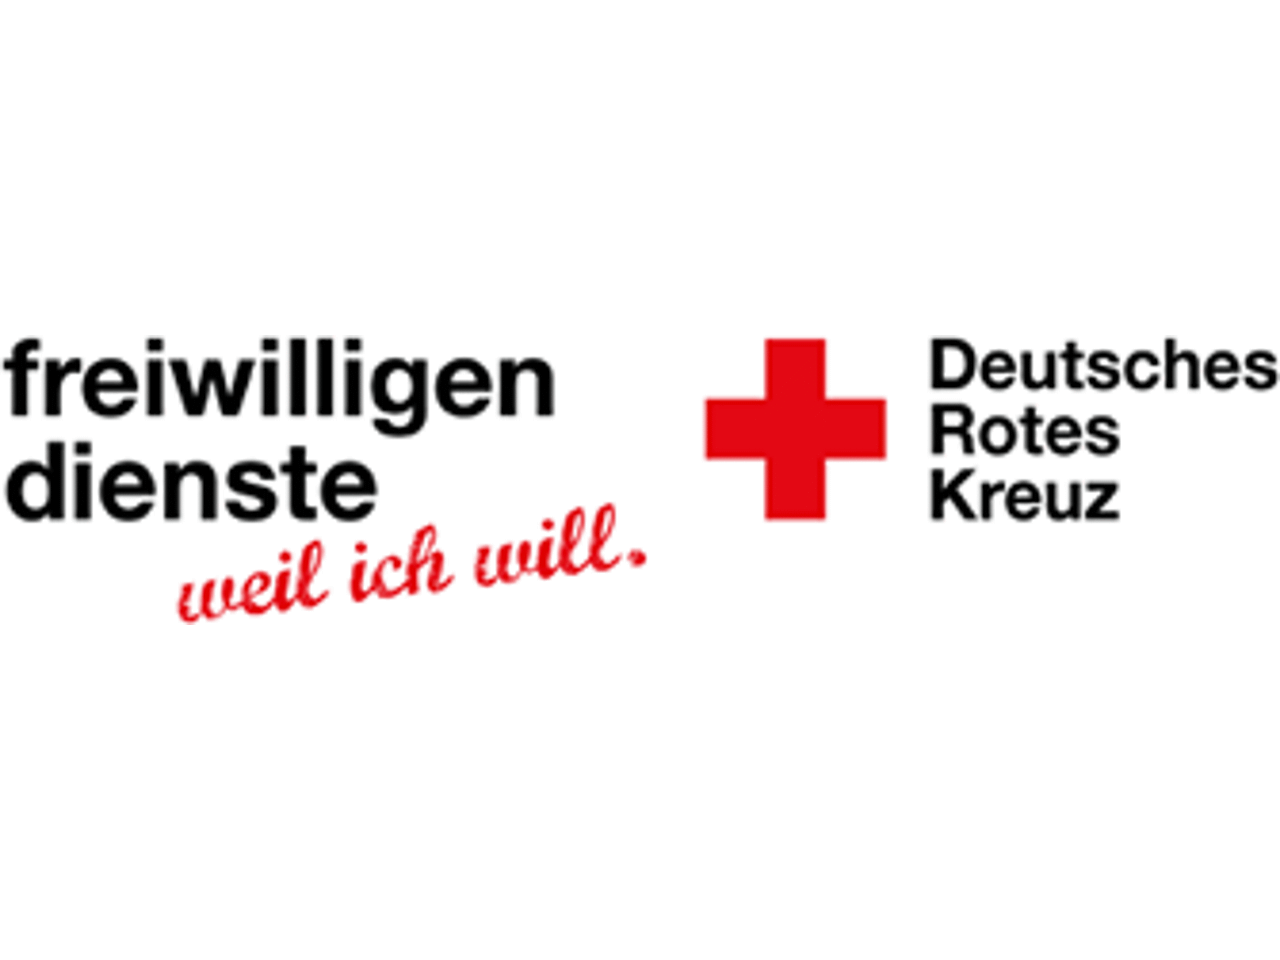 rotes Kreuz als Logo, links daneben steht "freiwilligendienste - weil ich das will"